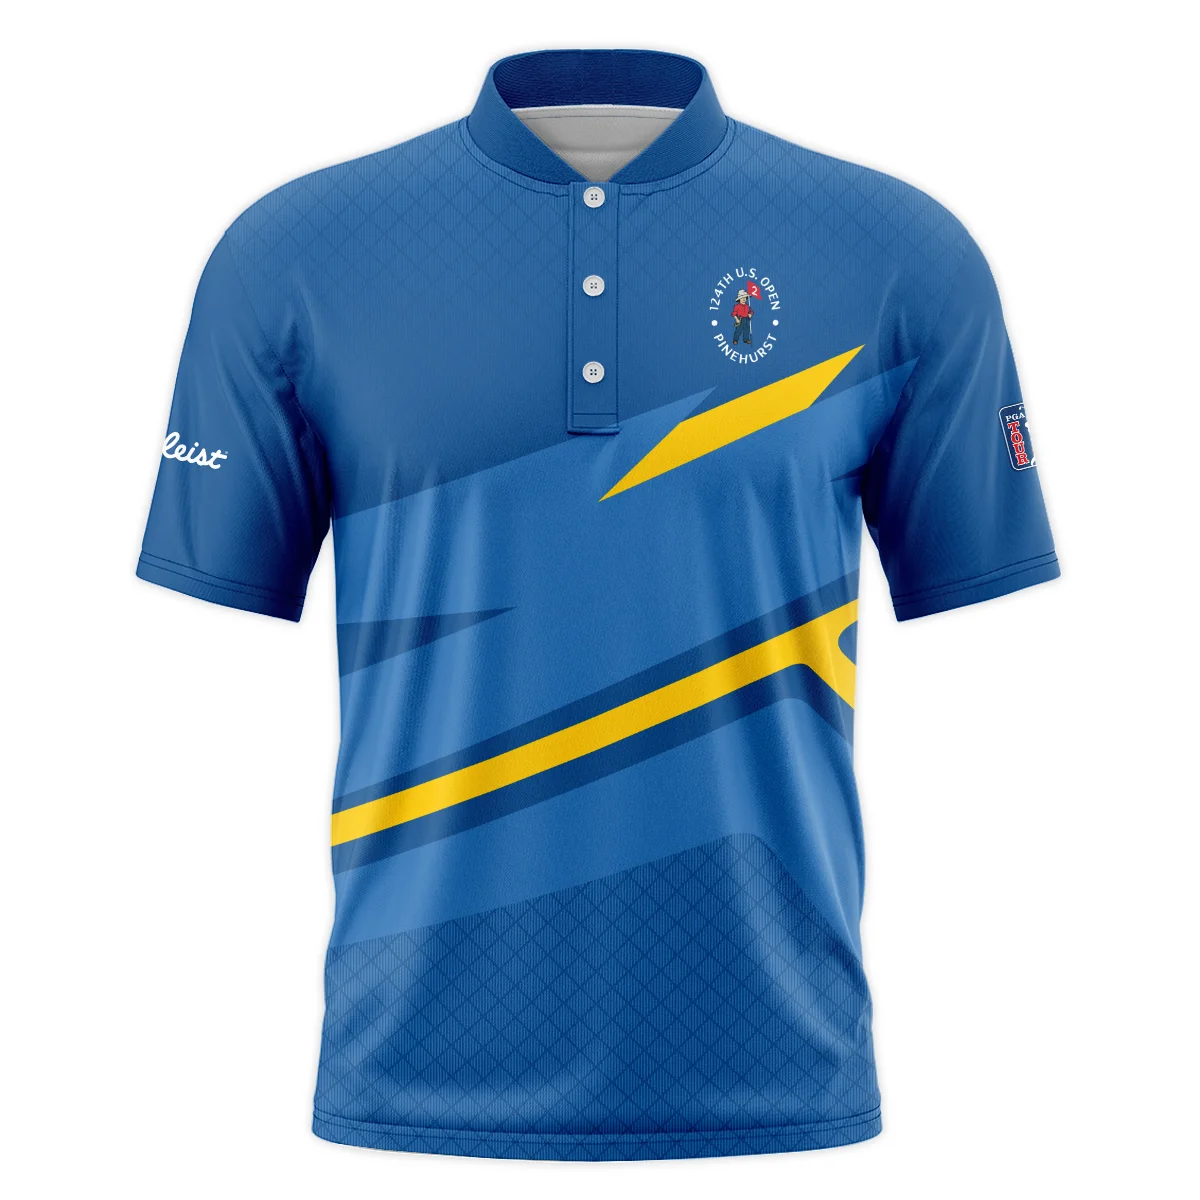 Titleist 124th U.S. Open Pinehurst Blue Yellow Mix Pattern Quarter-Zip Polo Shirt